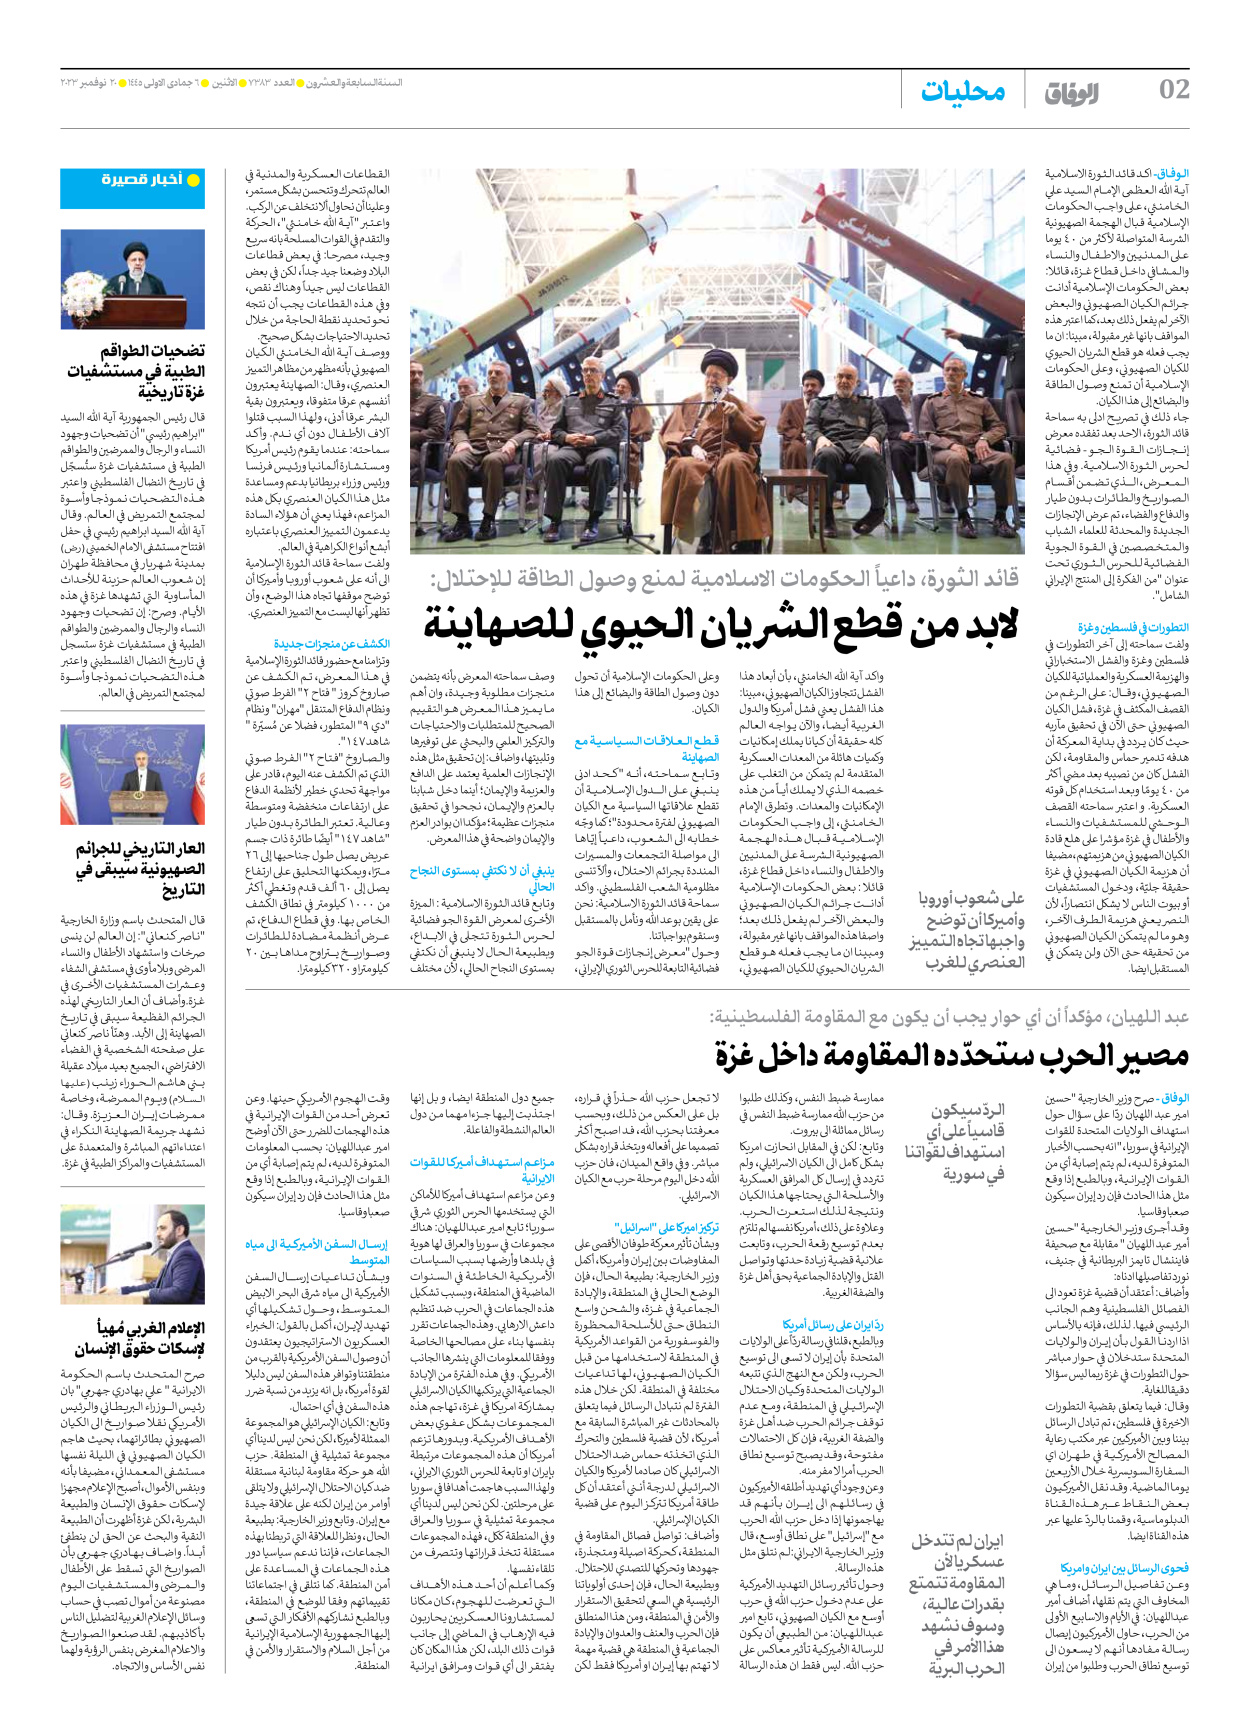 صحیفة ایران الدولیة الوفاق - العدد سبعة آلاف وثلاثمائة وثلاثة وثمانون - ٢٠ نوفمبر ٢٠٢٣ - الصفحة ۲